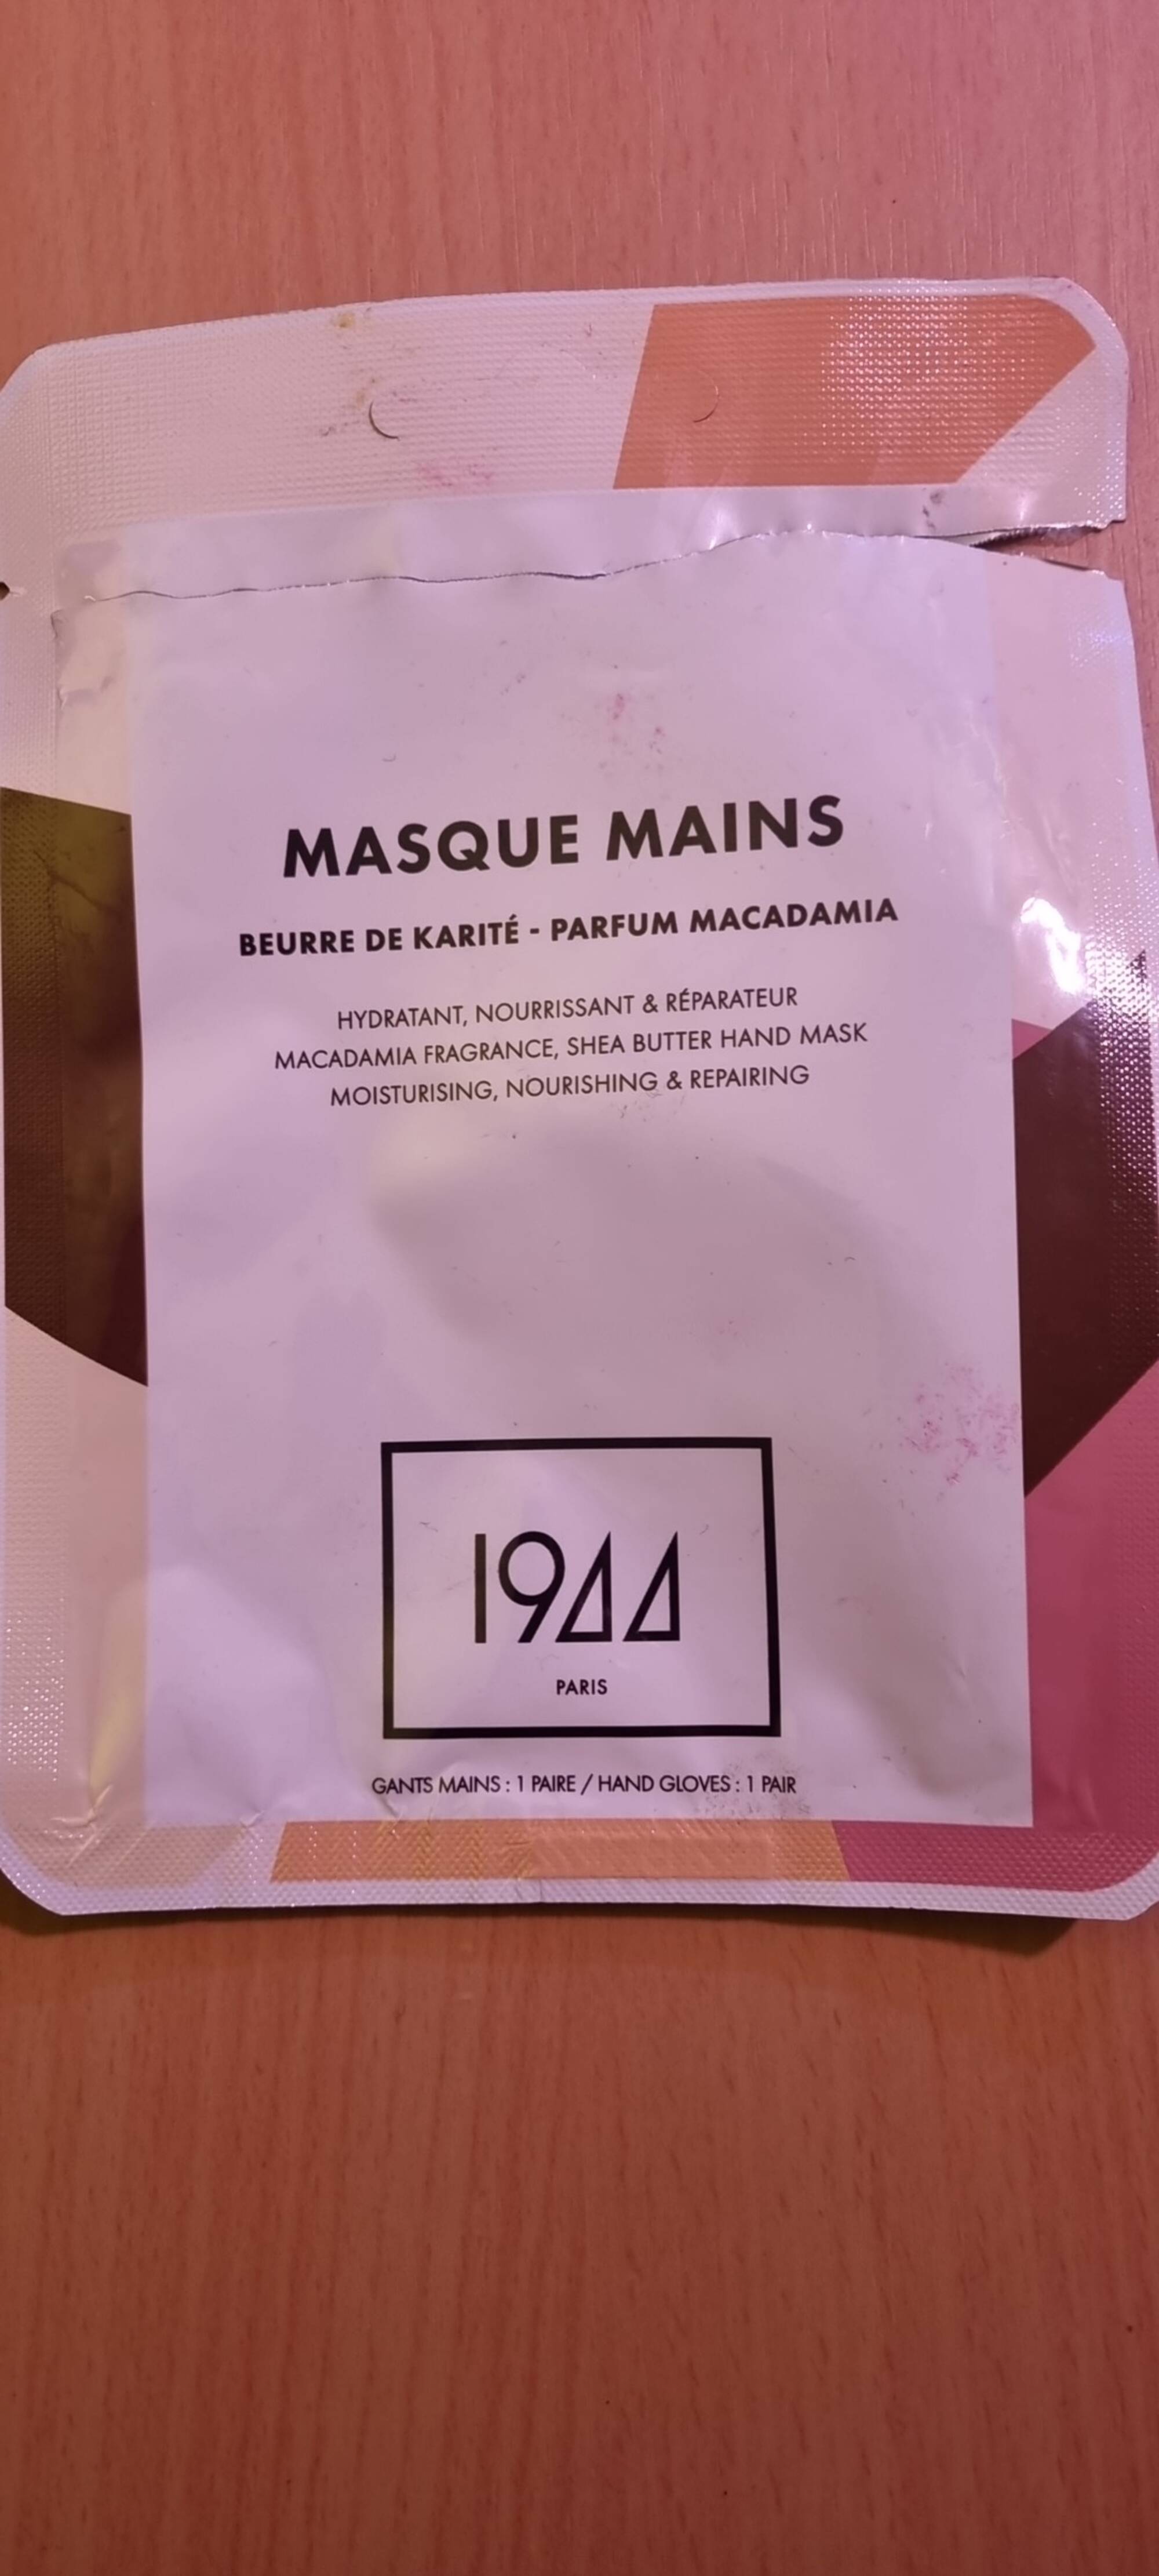 1944 PARIS - Masque mains au beurre de karité parfum macadamia